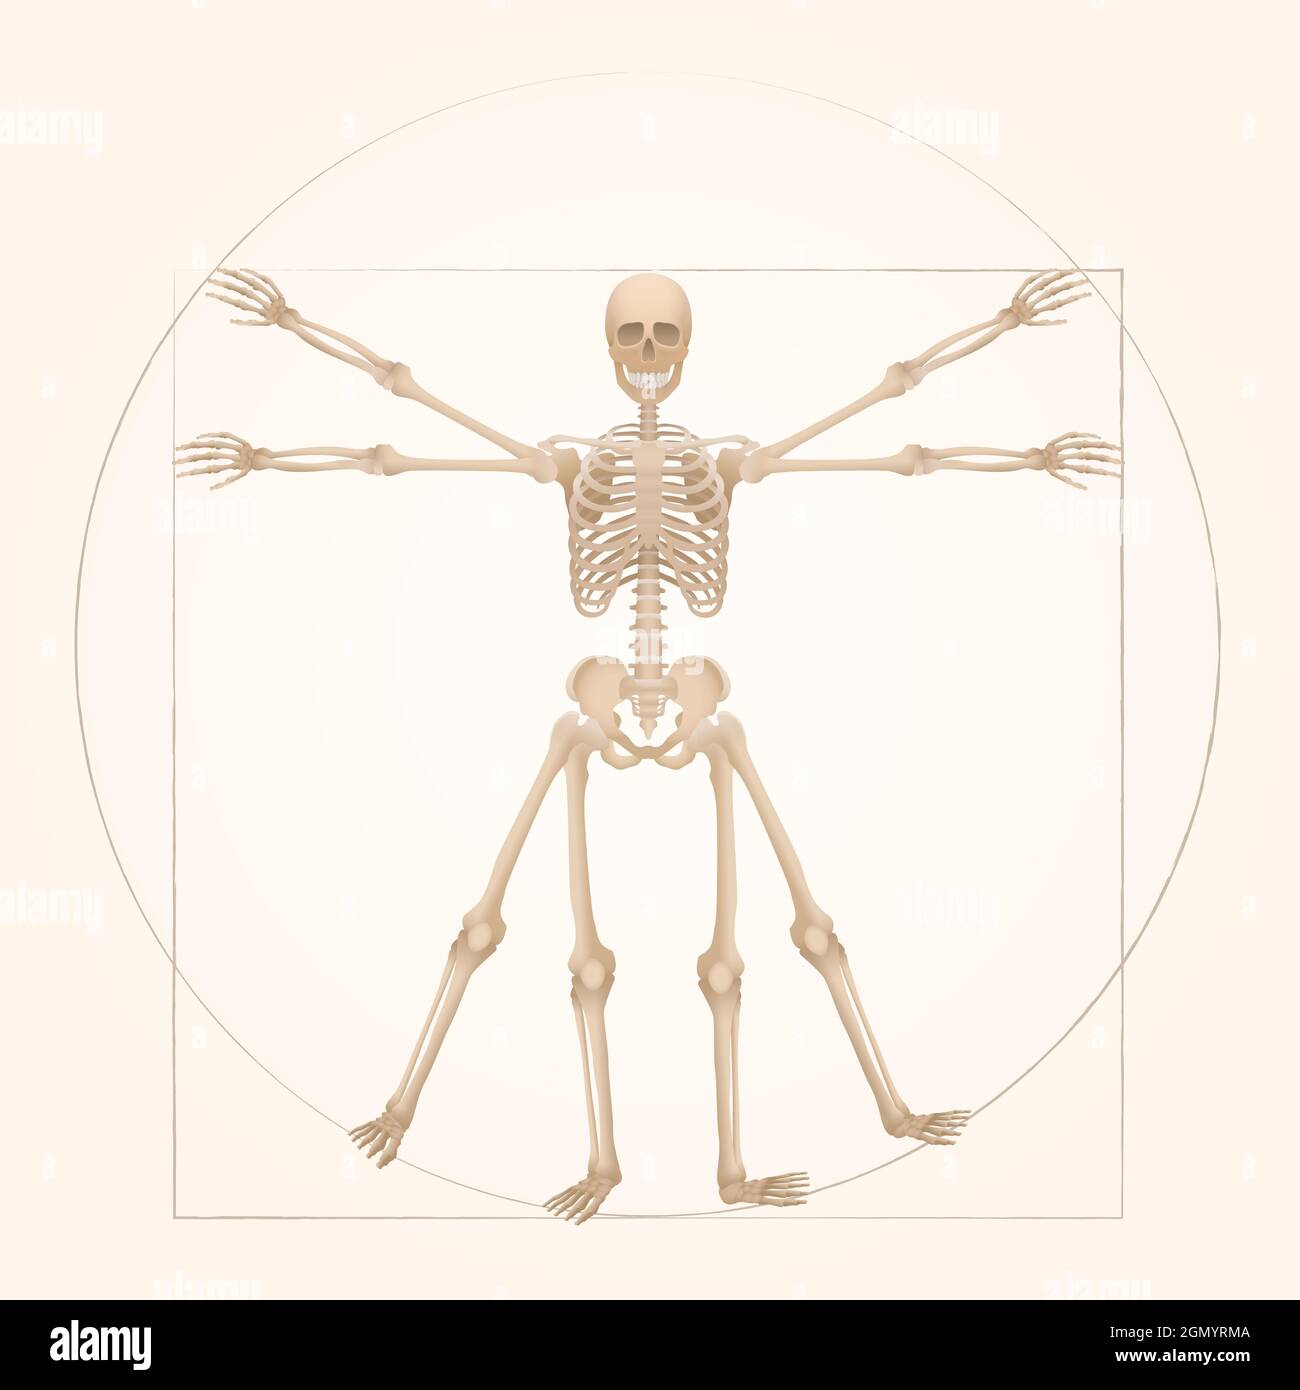 Vitruwisches Skelett - heilige Geometrie in der Grafik, dargestellt durch eine Skelettfigur mit anatomischen Proportionen einer erwachsenen Person. Stockfoto